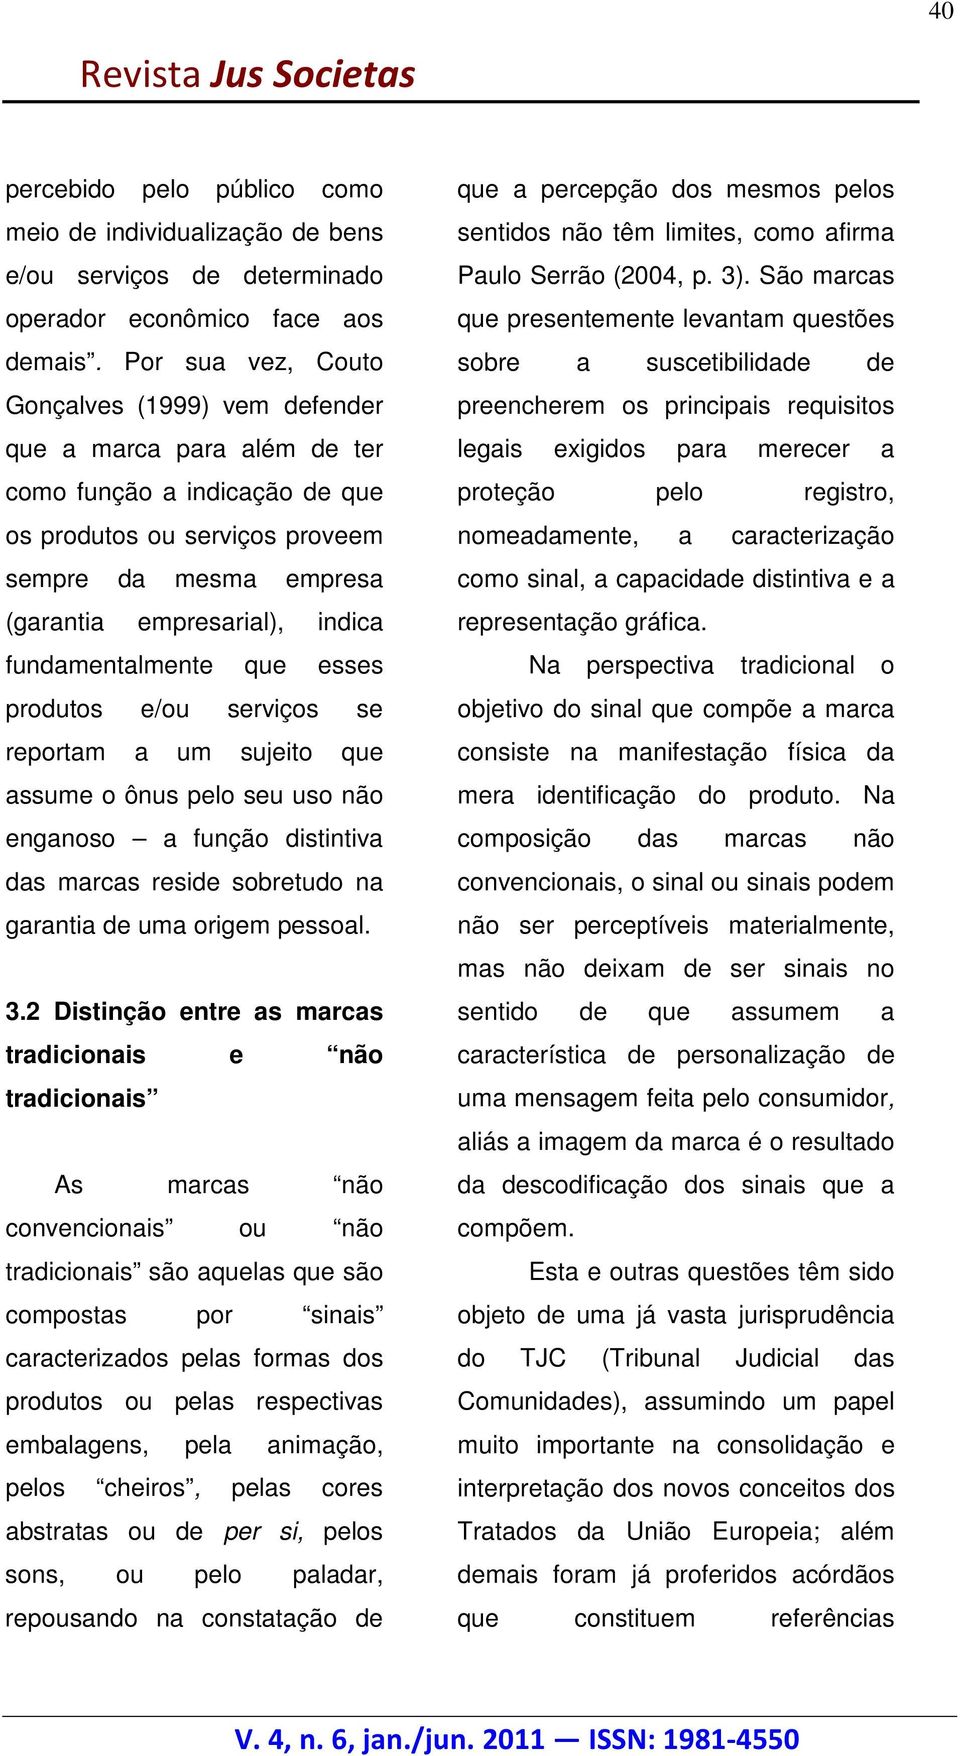 Por sua vez, Couto sobre a suscetibilidade de Gonçalves (1999) vem defender preencherem os principais requisitos que a marca para além de ter legais exigidos para merecer a como função a indicação de